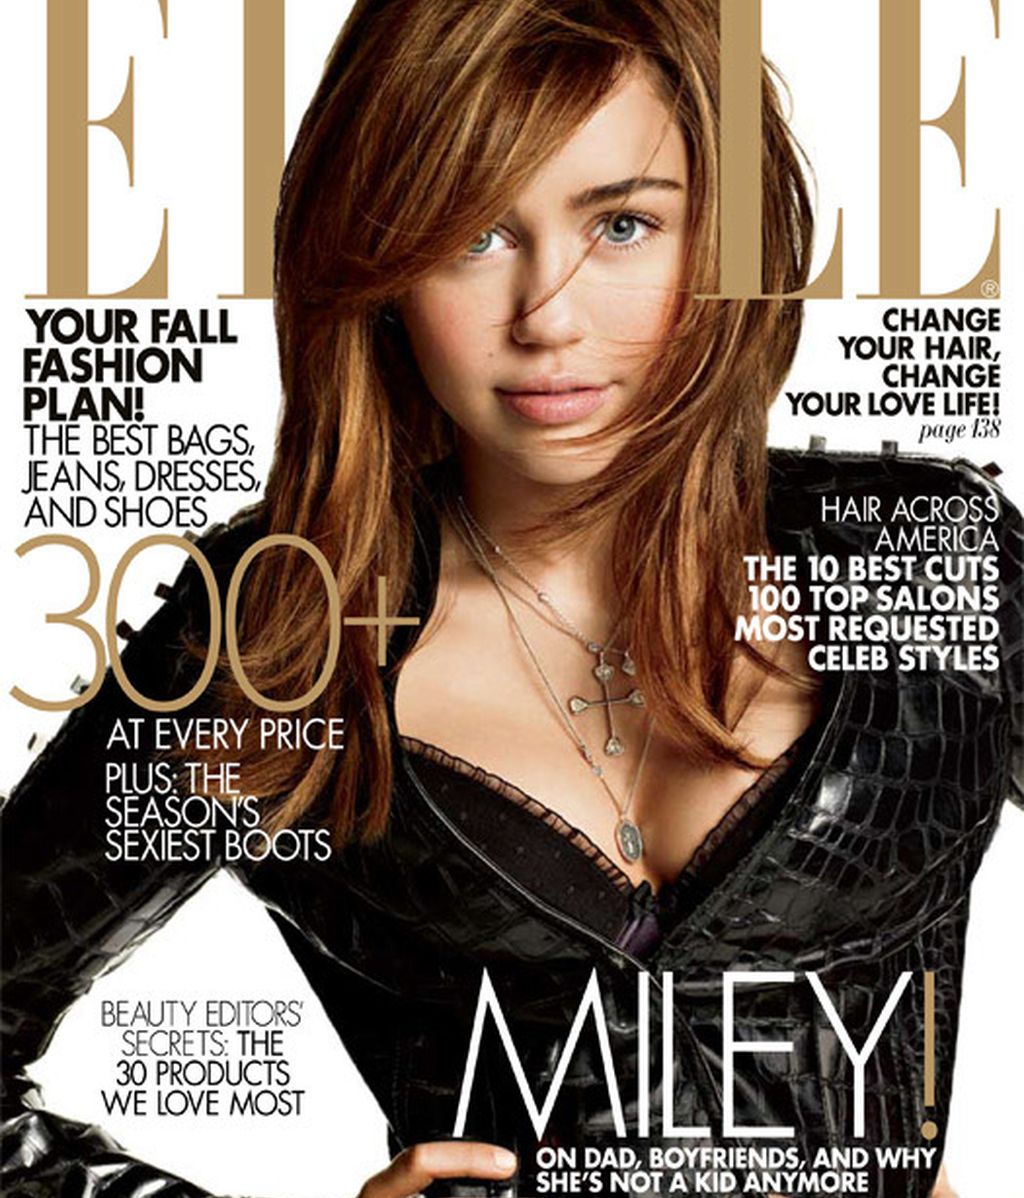 Las revistas se disputan a Miley Cyrus